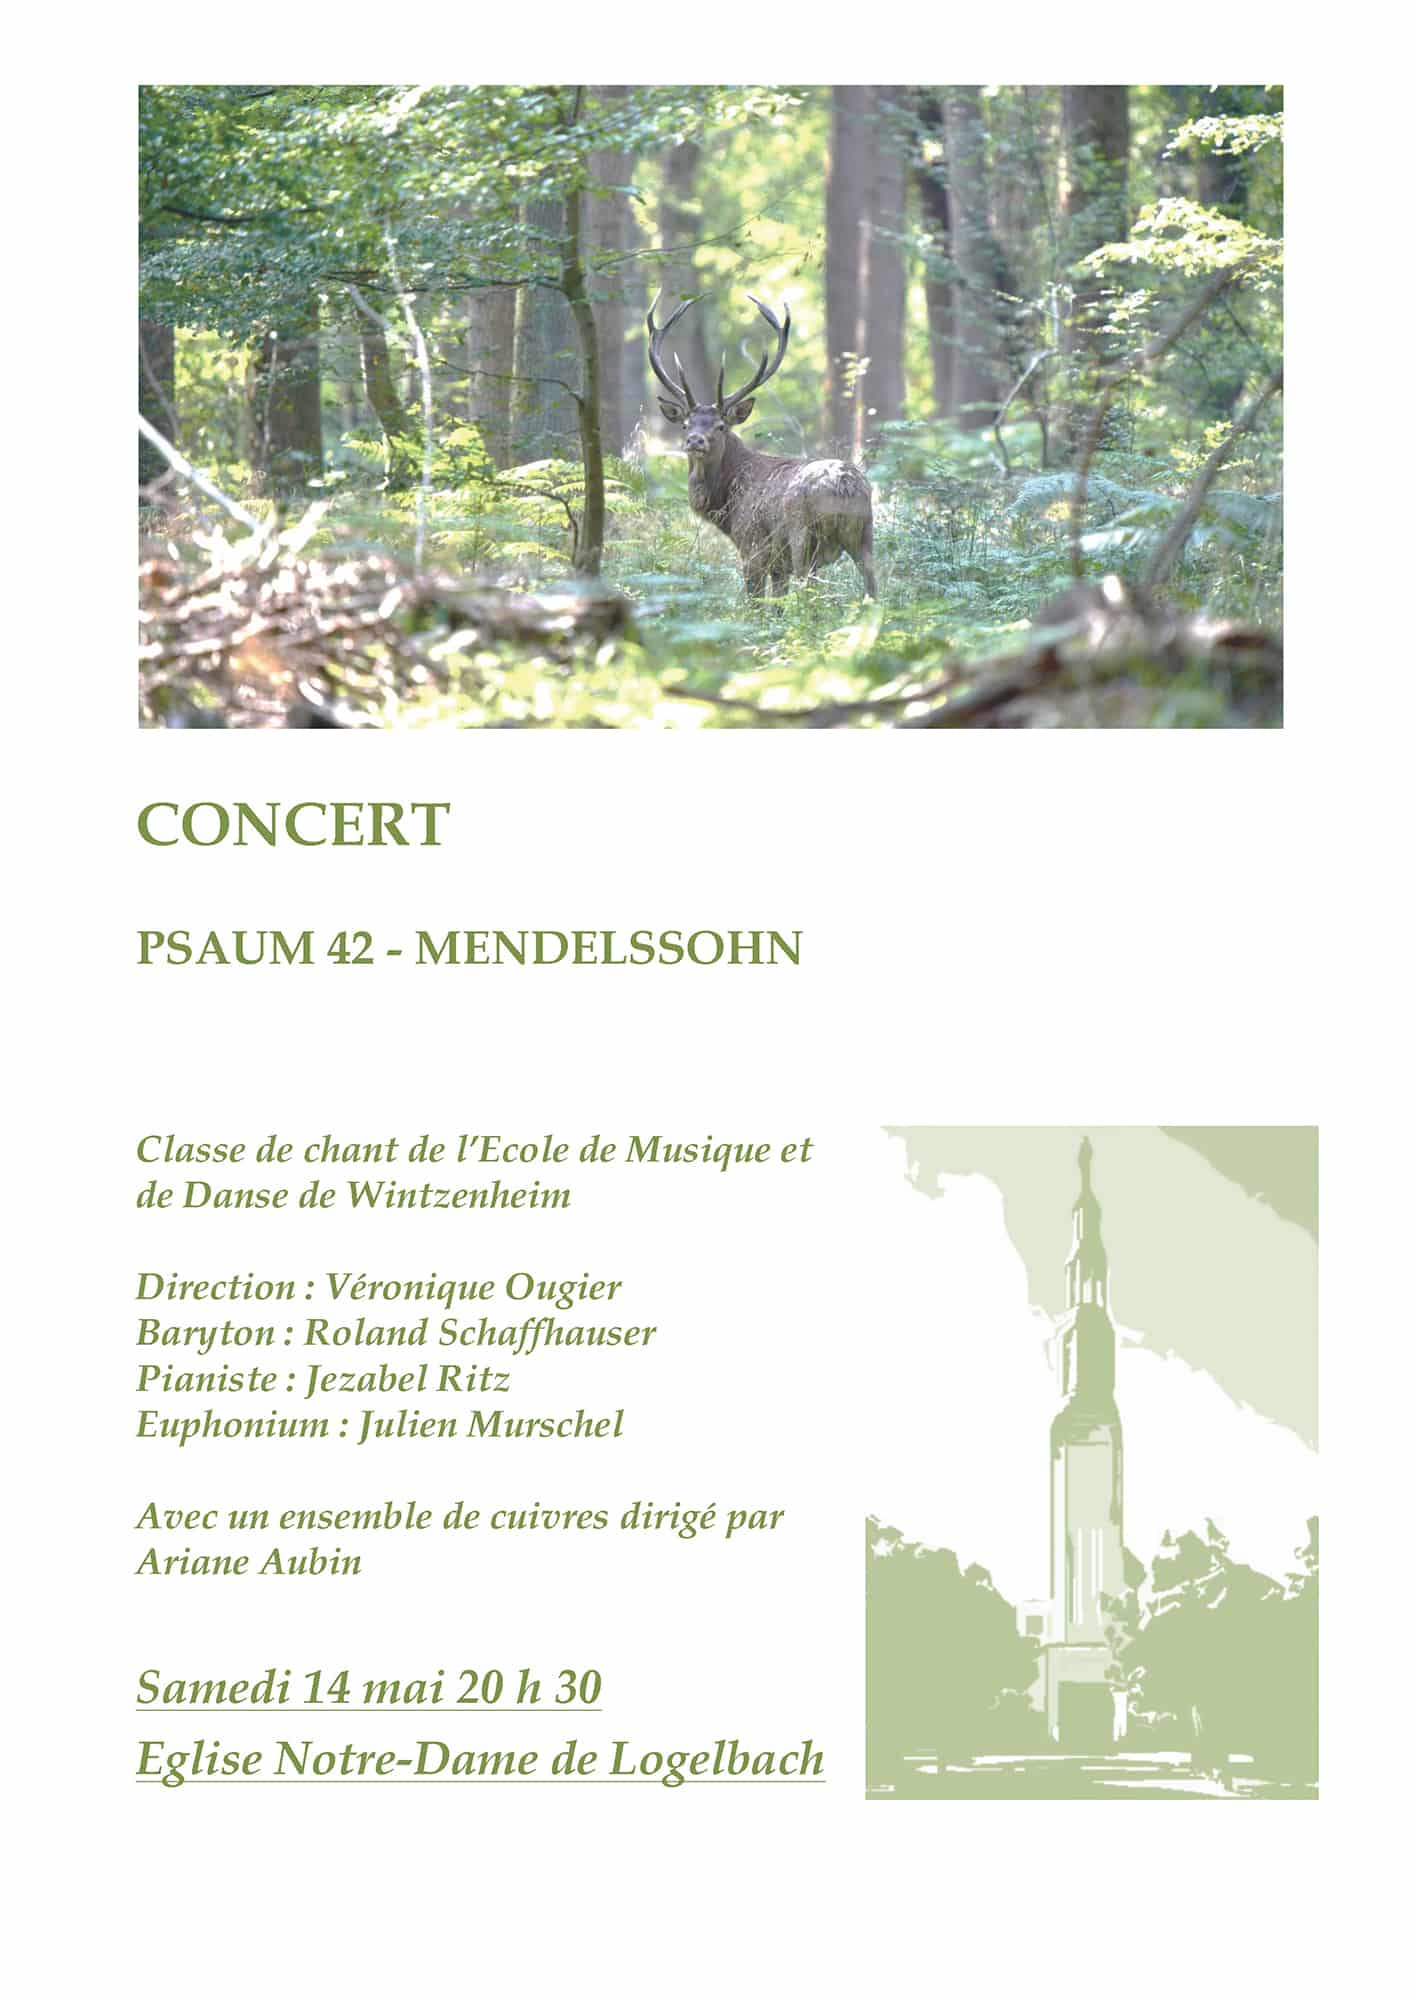 Concert Psaum 42 - Mendelssohn